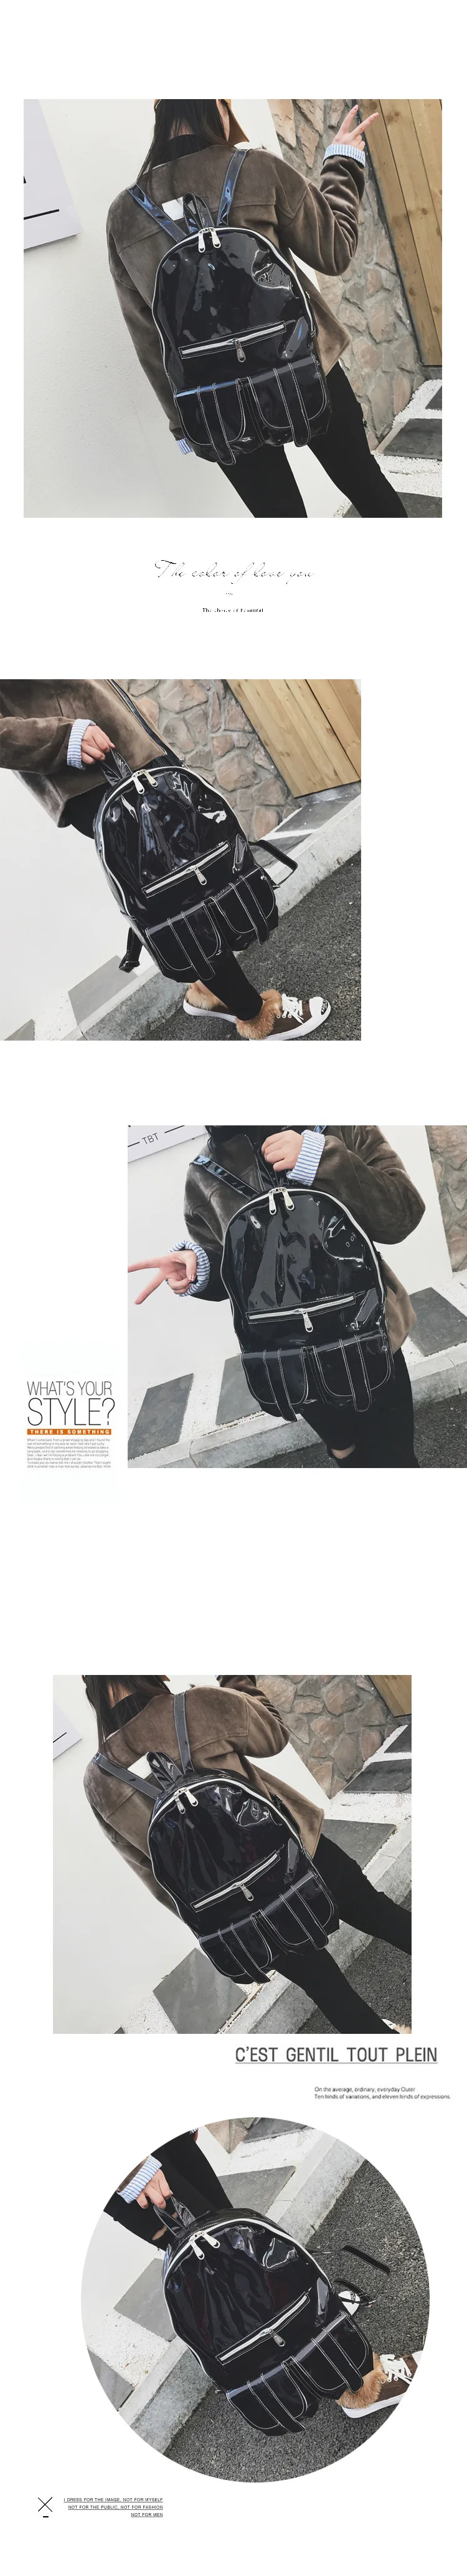 2018 модные женские туфли женский рюкзак школьный рюкзак Водонепроницаемый Дорожная сумка на ремне, дизайнер Лазерная игристое рюкзак для